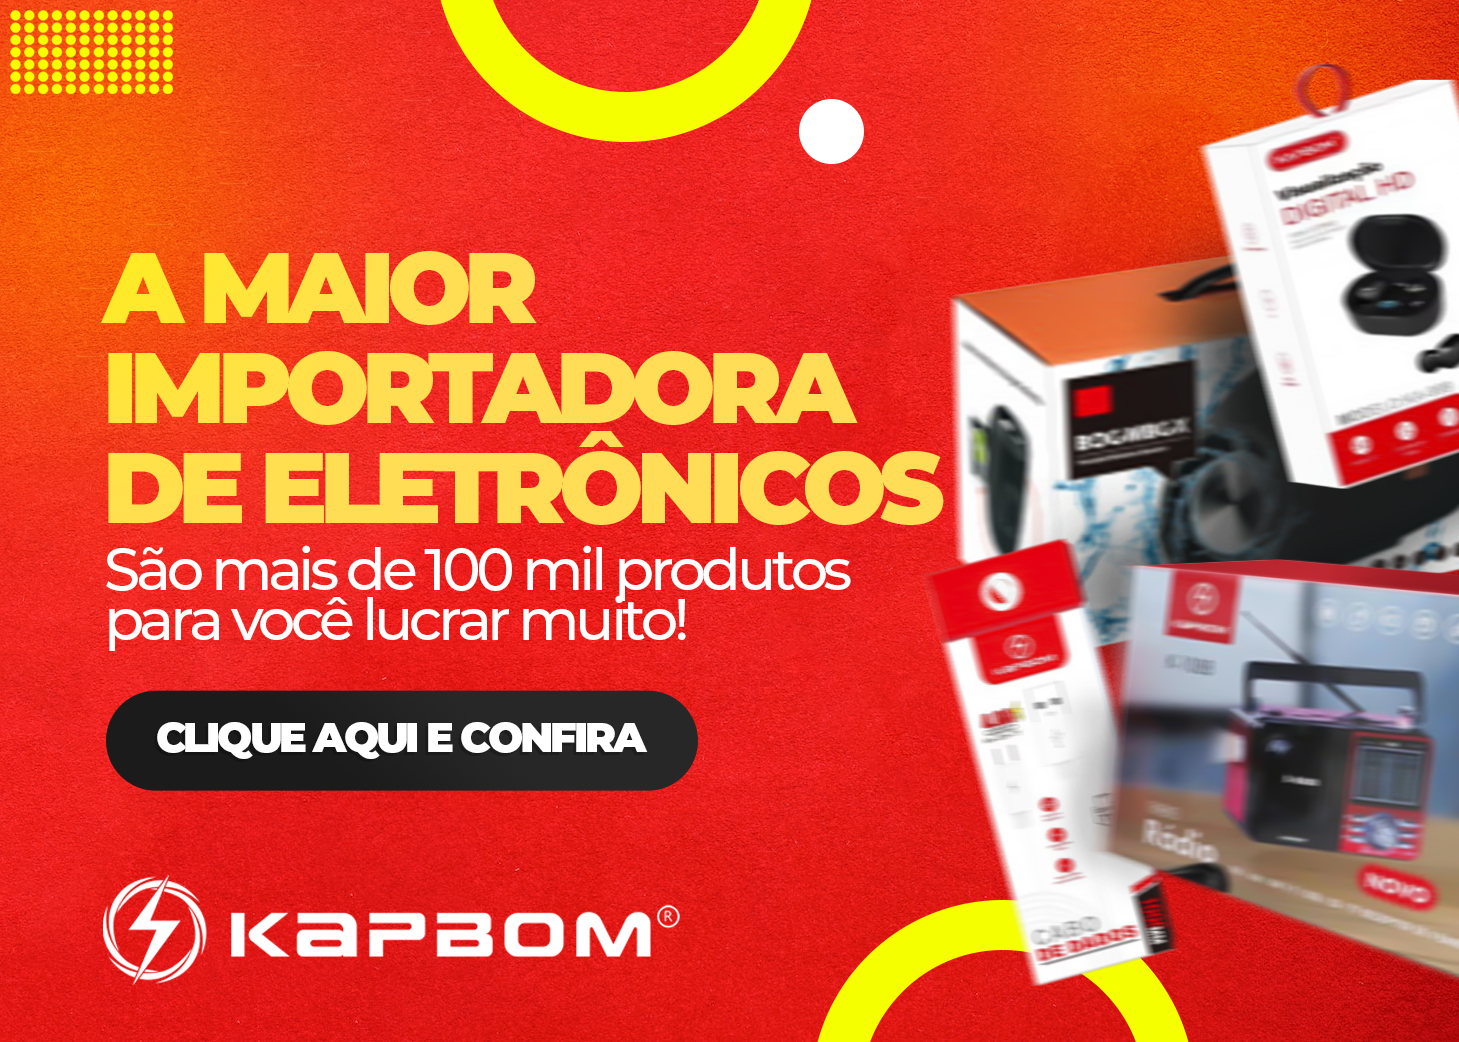 Kapbom - Importadora de Eletrônicos - Cote online agora